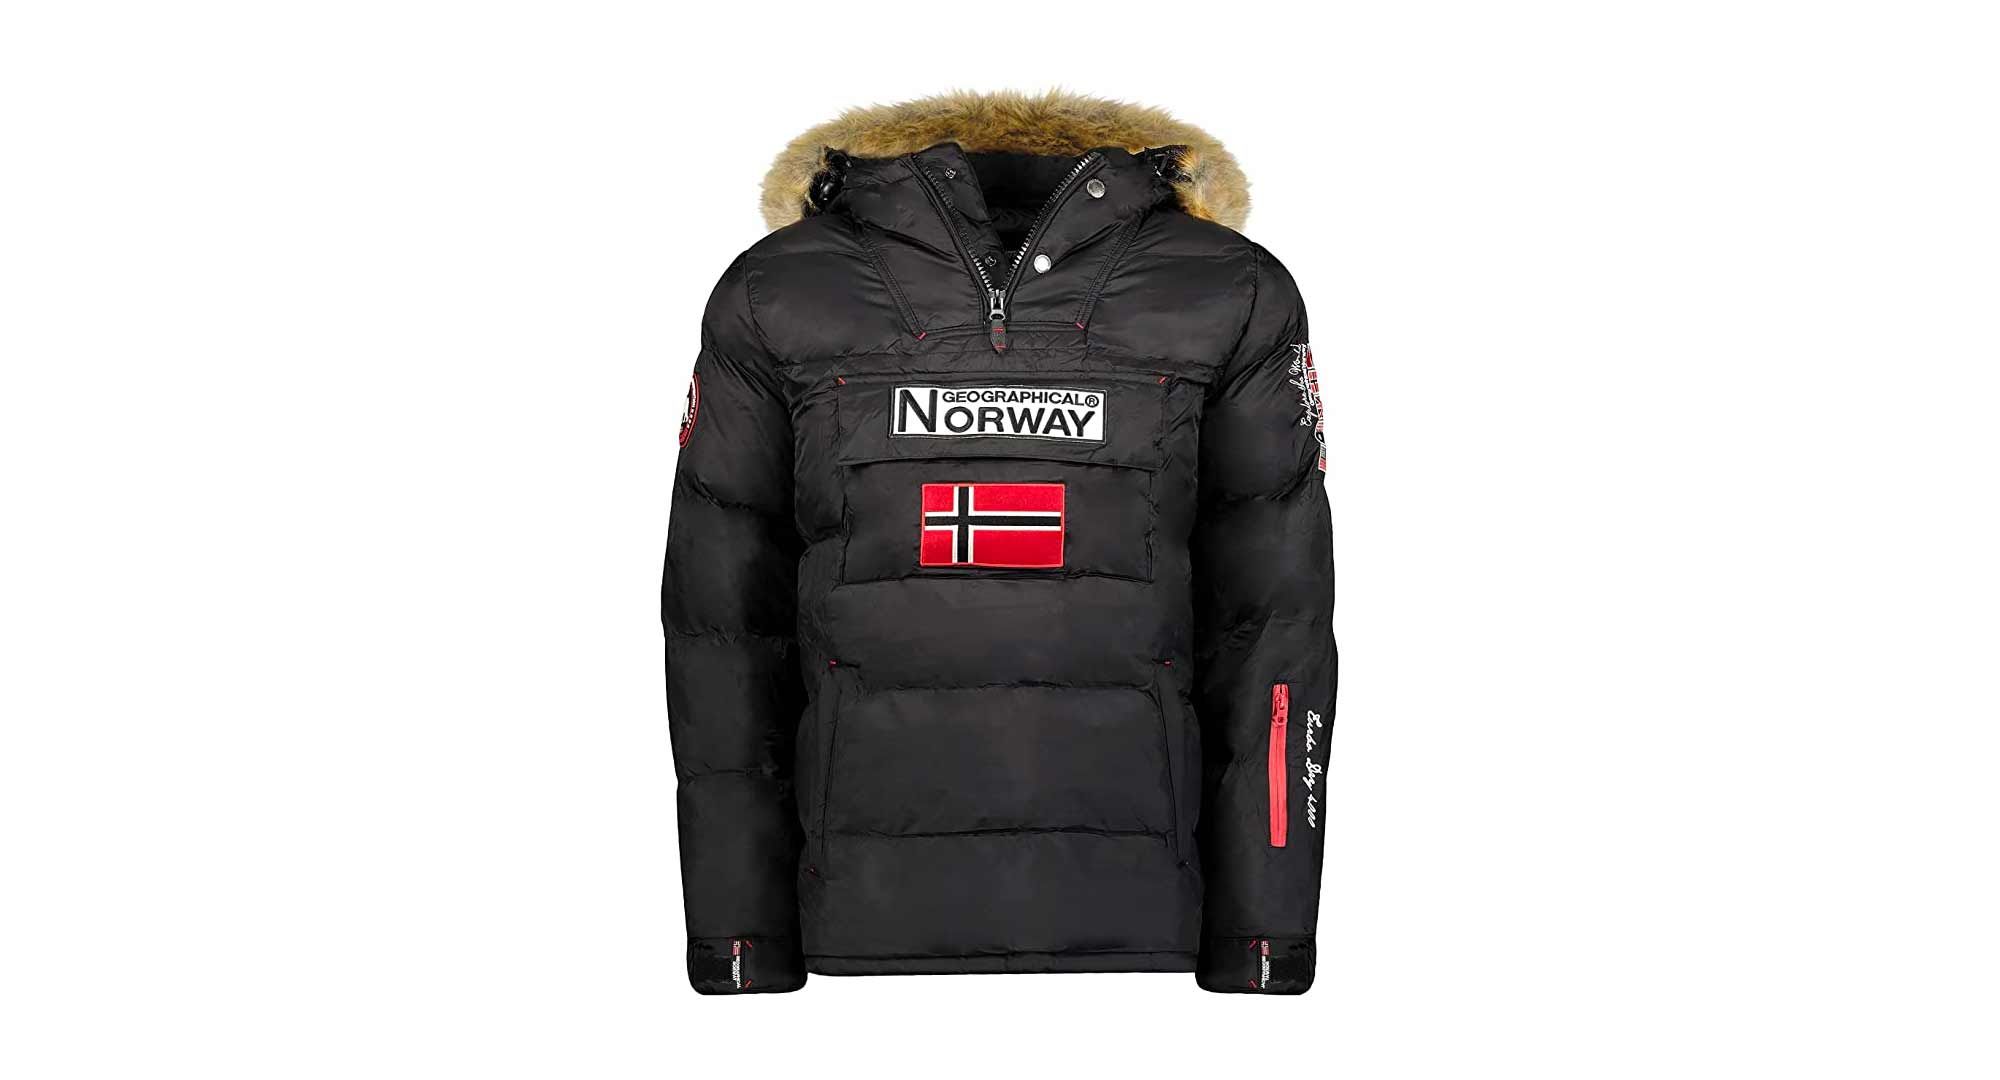 chaqueta Geographical Norway más vendida de Amazon